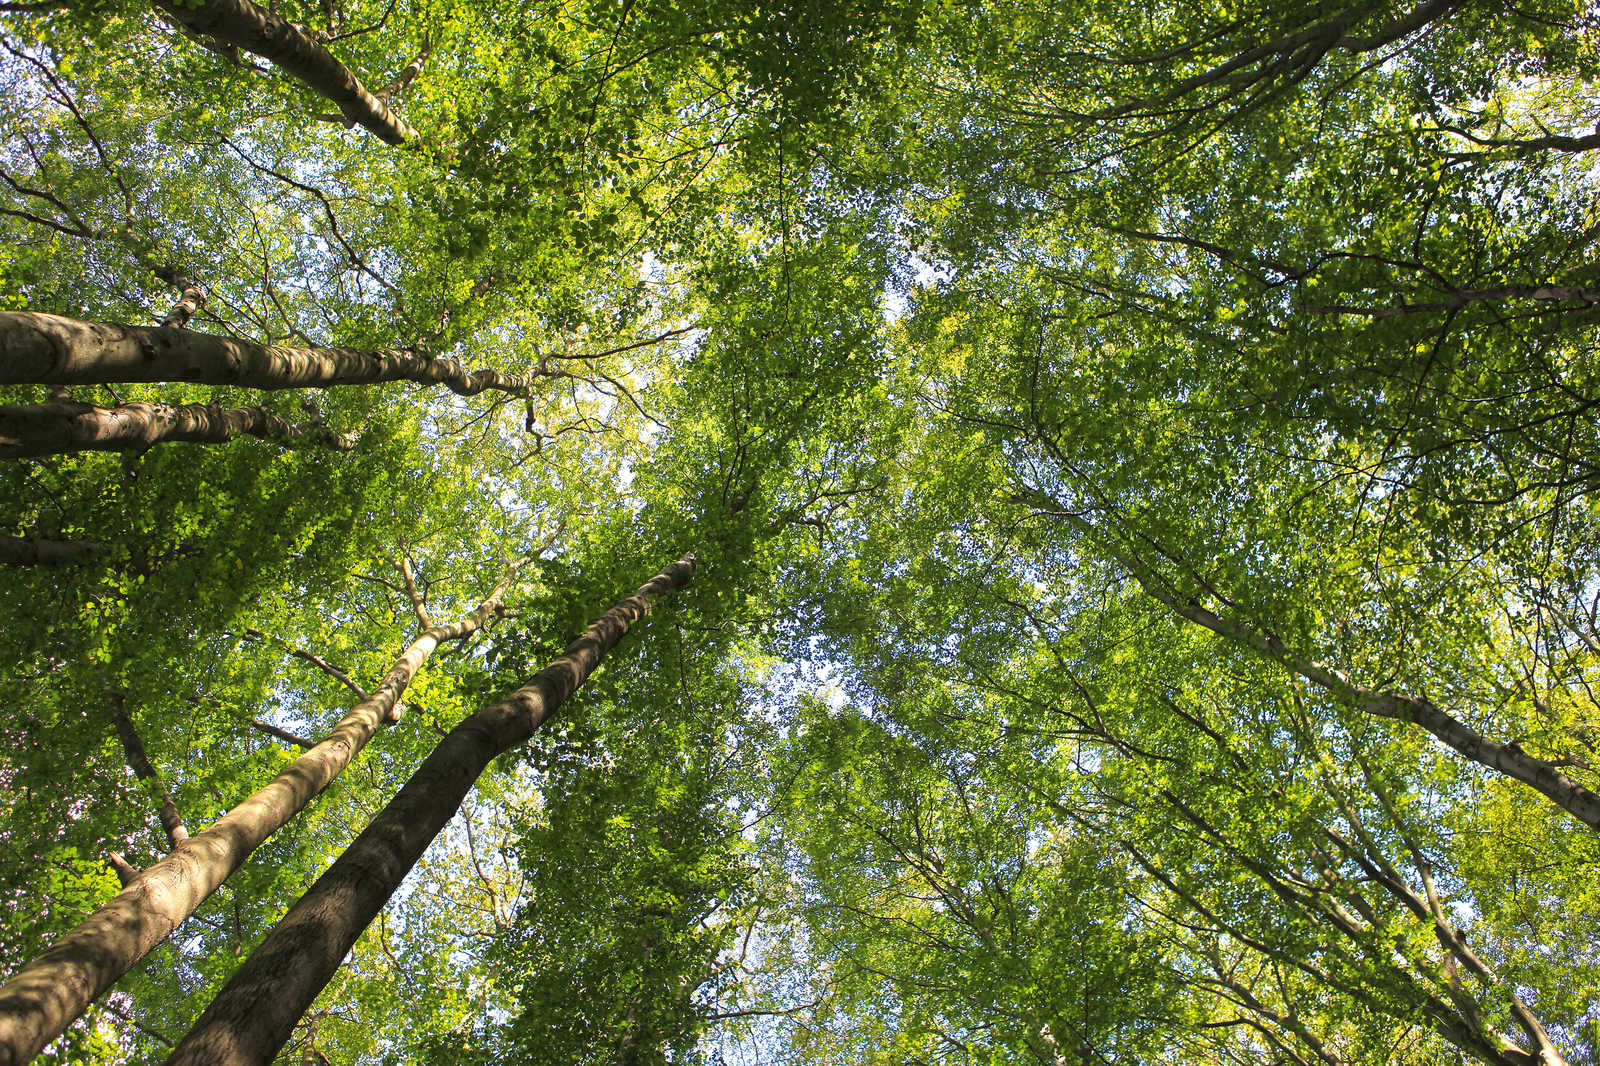             Cuadro lienzo follaje con copas de árboles de bosque caducifolio - 1,20 m x 0,80 m
        